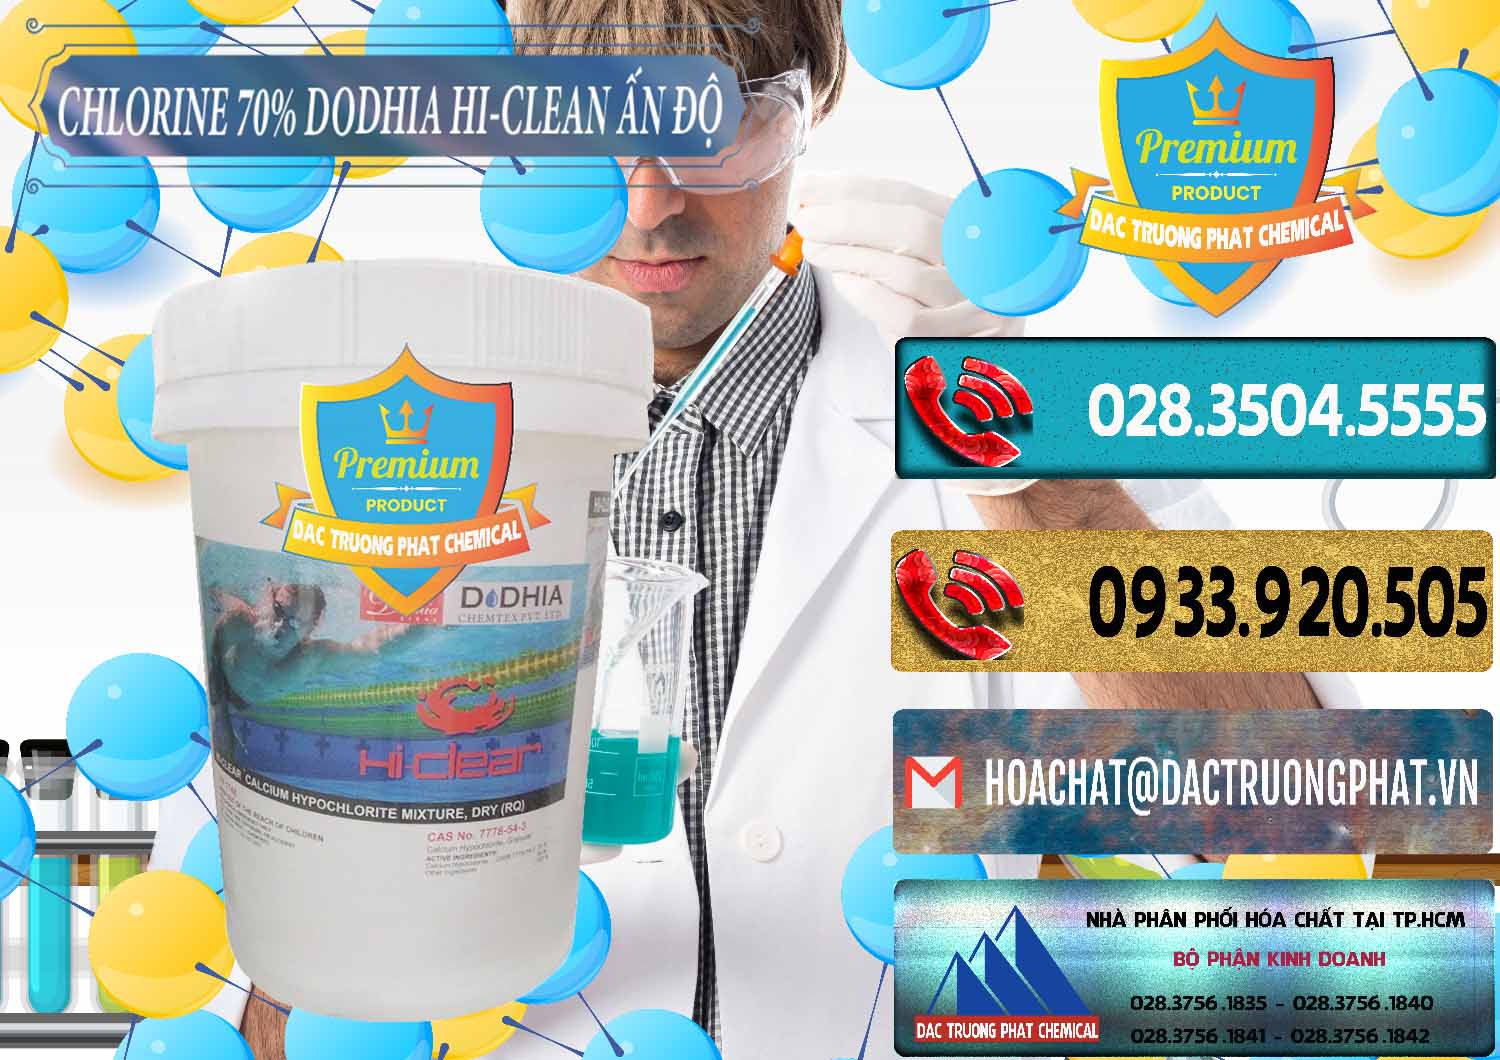 Công ty bán ( cung cấp ) Chlorine – Clorin 70% Dodhia Hi-Clean Ấn Độ India - 0214 - Cty nhập khẩu & cung cấp hóa chất tại TP.HCM - hoachatdetnhuom.com